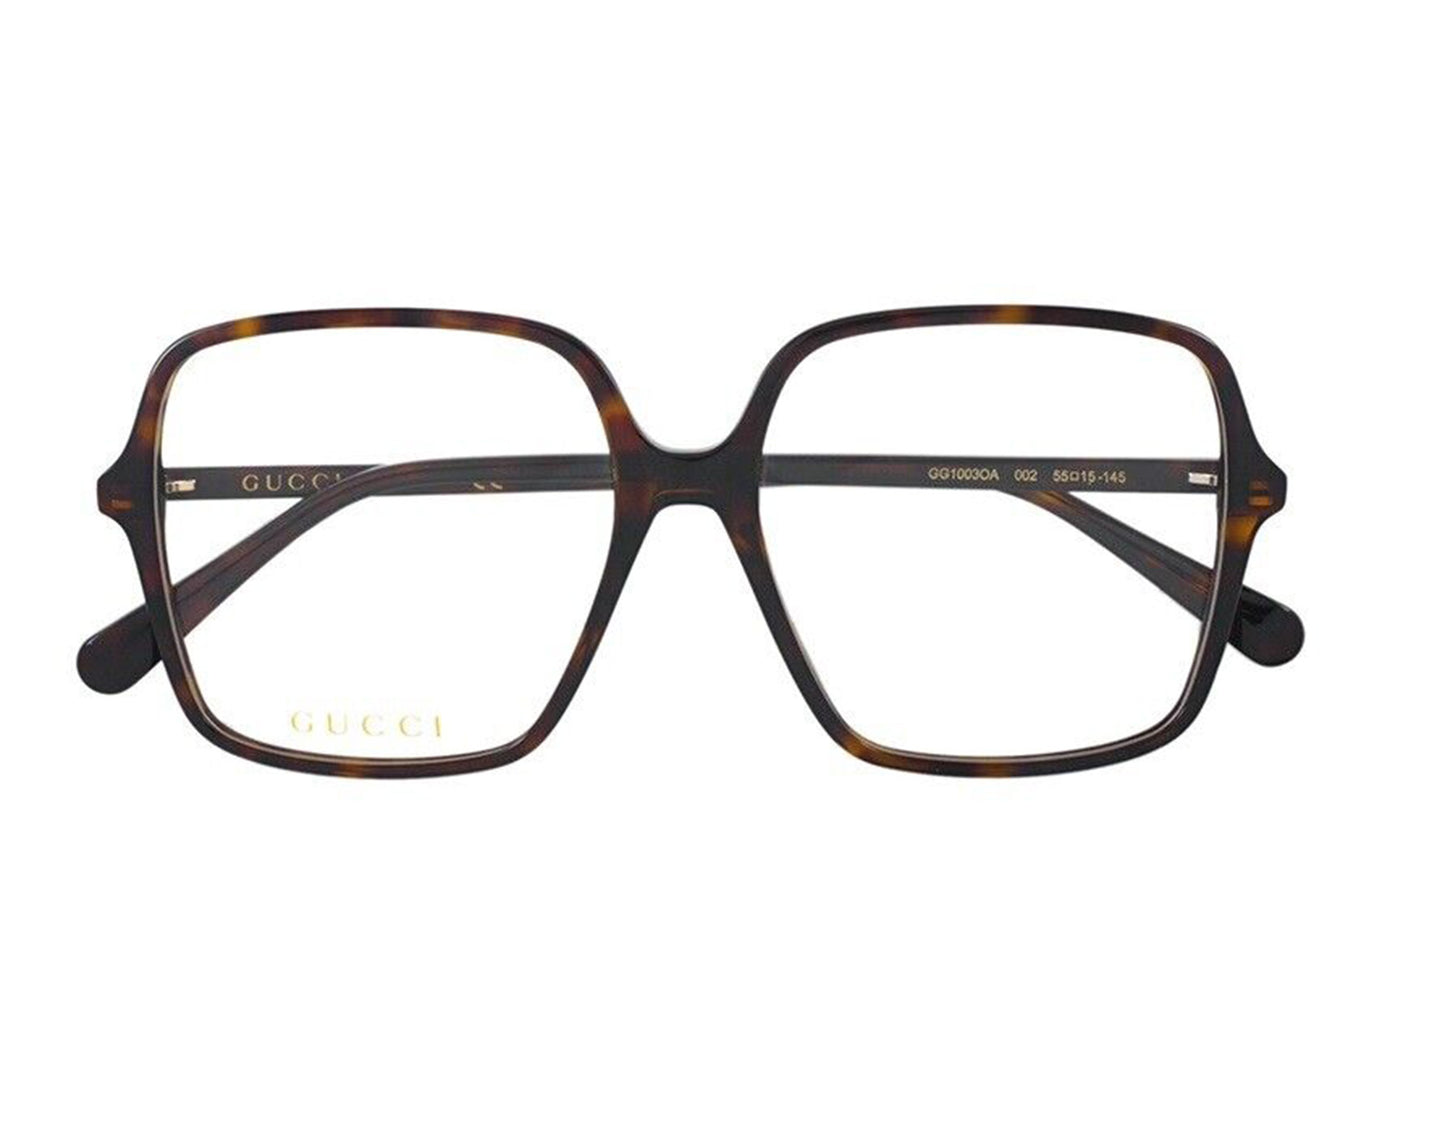 Gucci GG1003oA-002 55mm New Eyeglasses